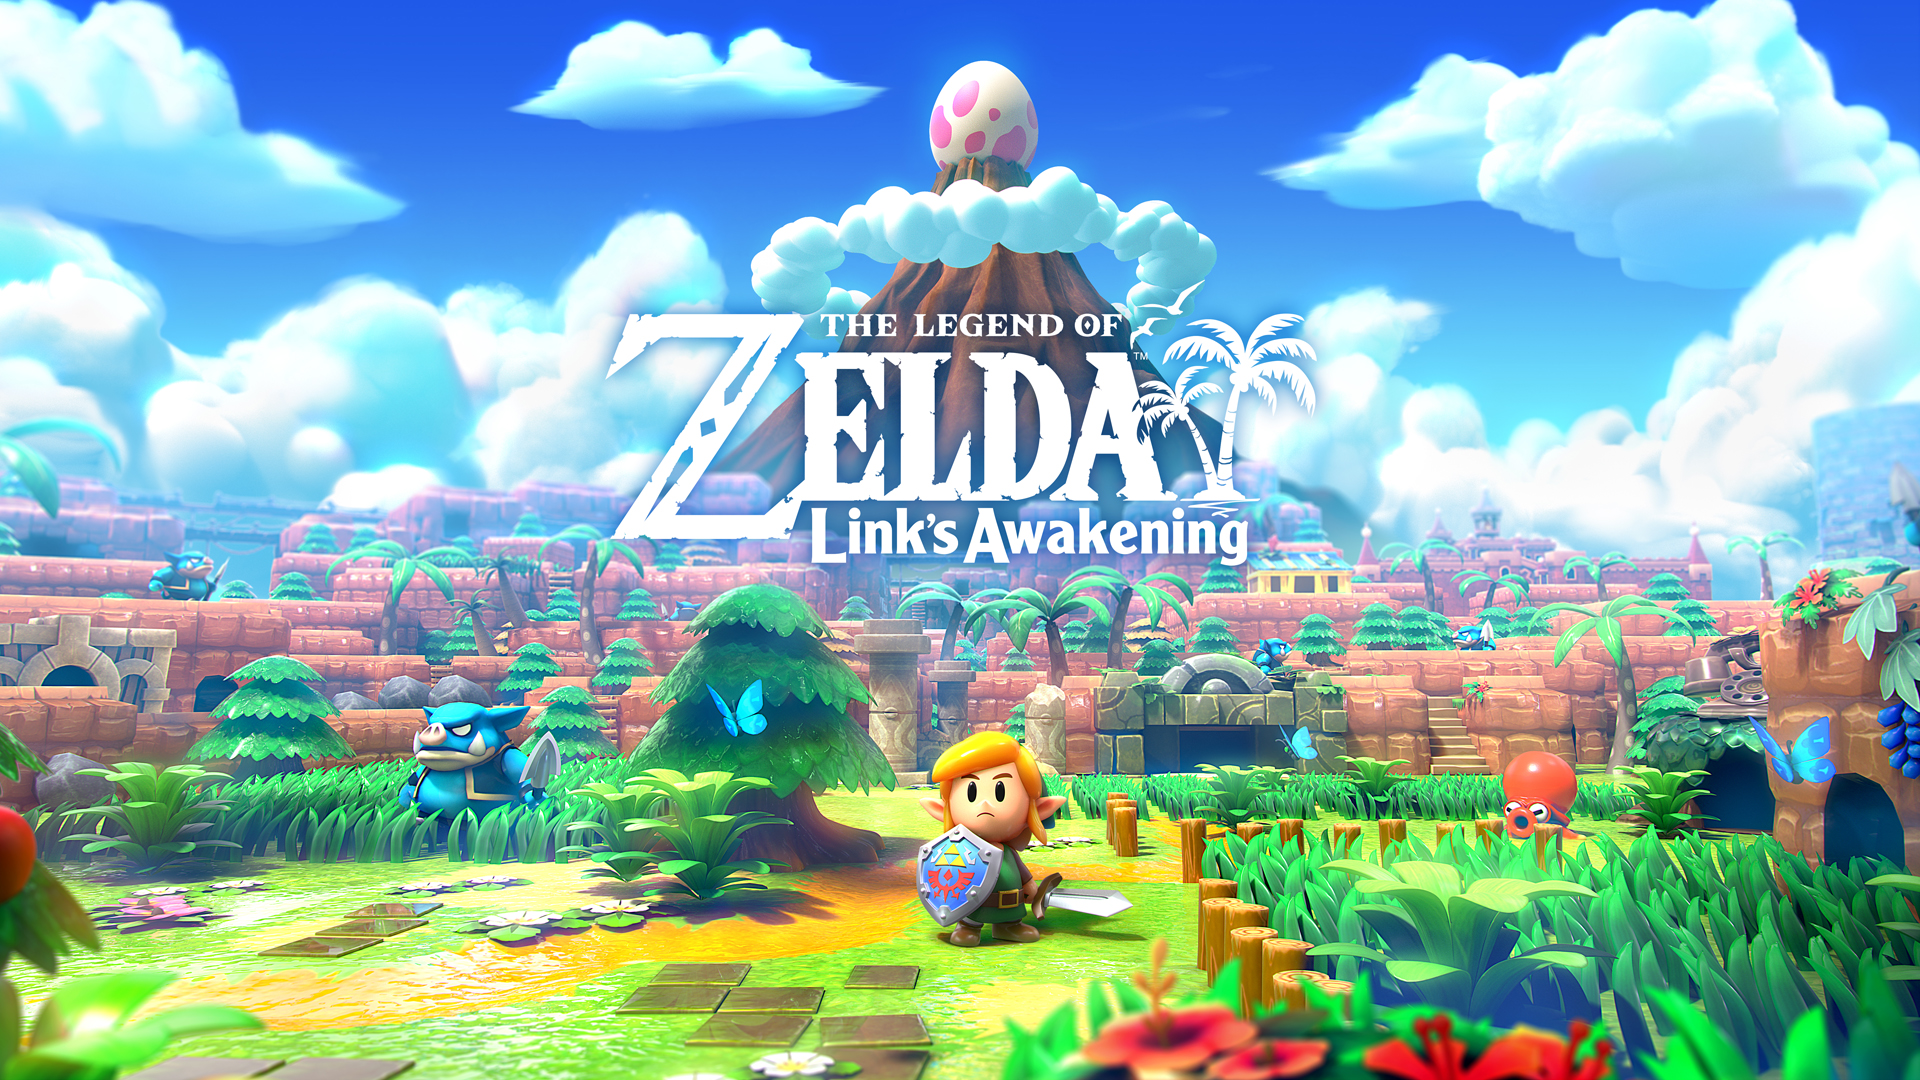 The Legend of Zelda Link's Awakening trailer